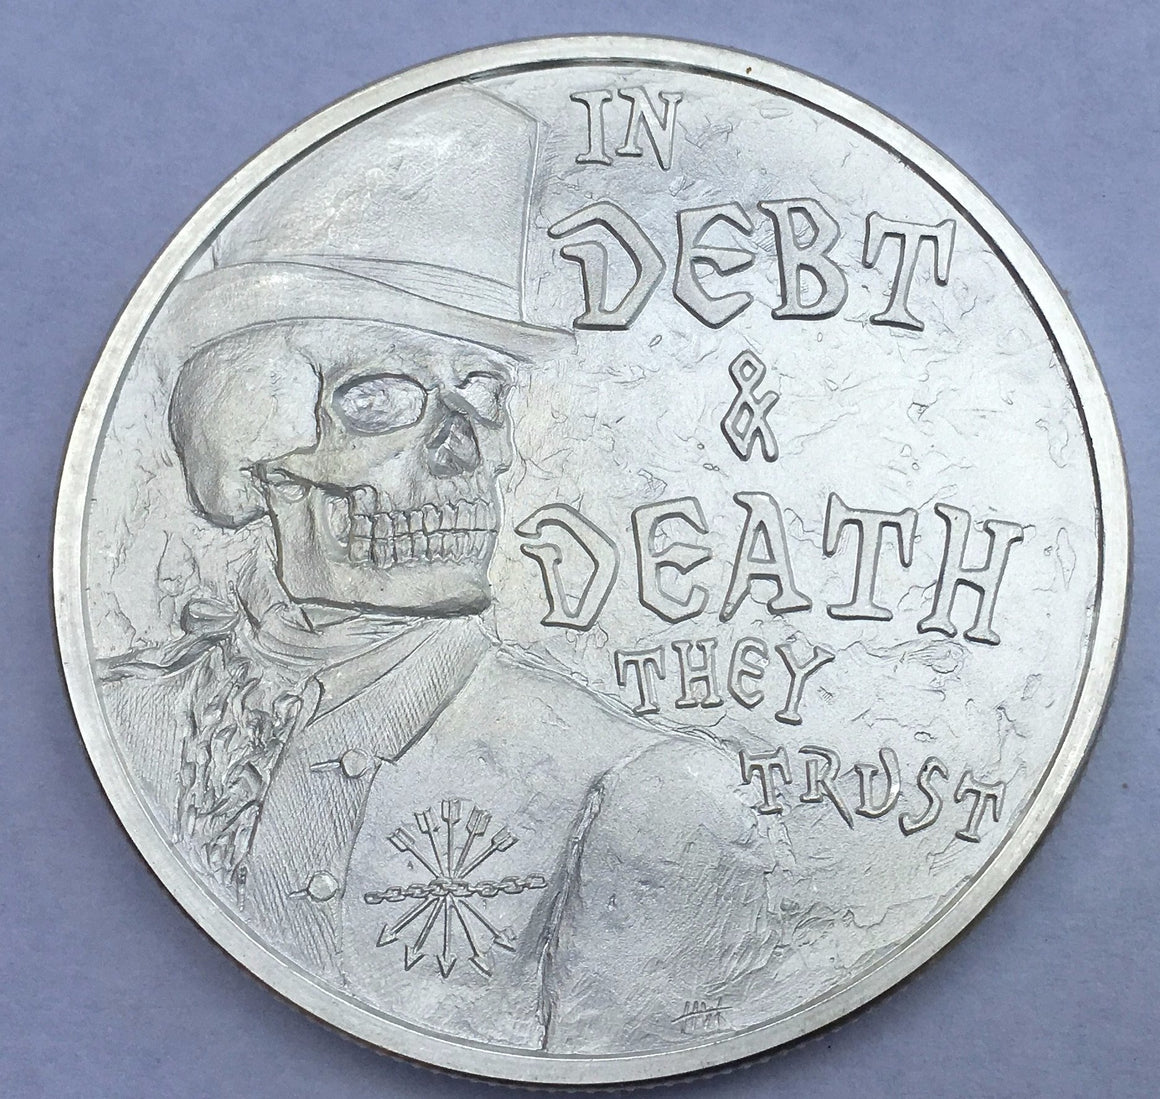 Debt & Death V3 by Silver Shield, Mini Mintage - BU 1 oz .999 Silver Round